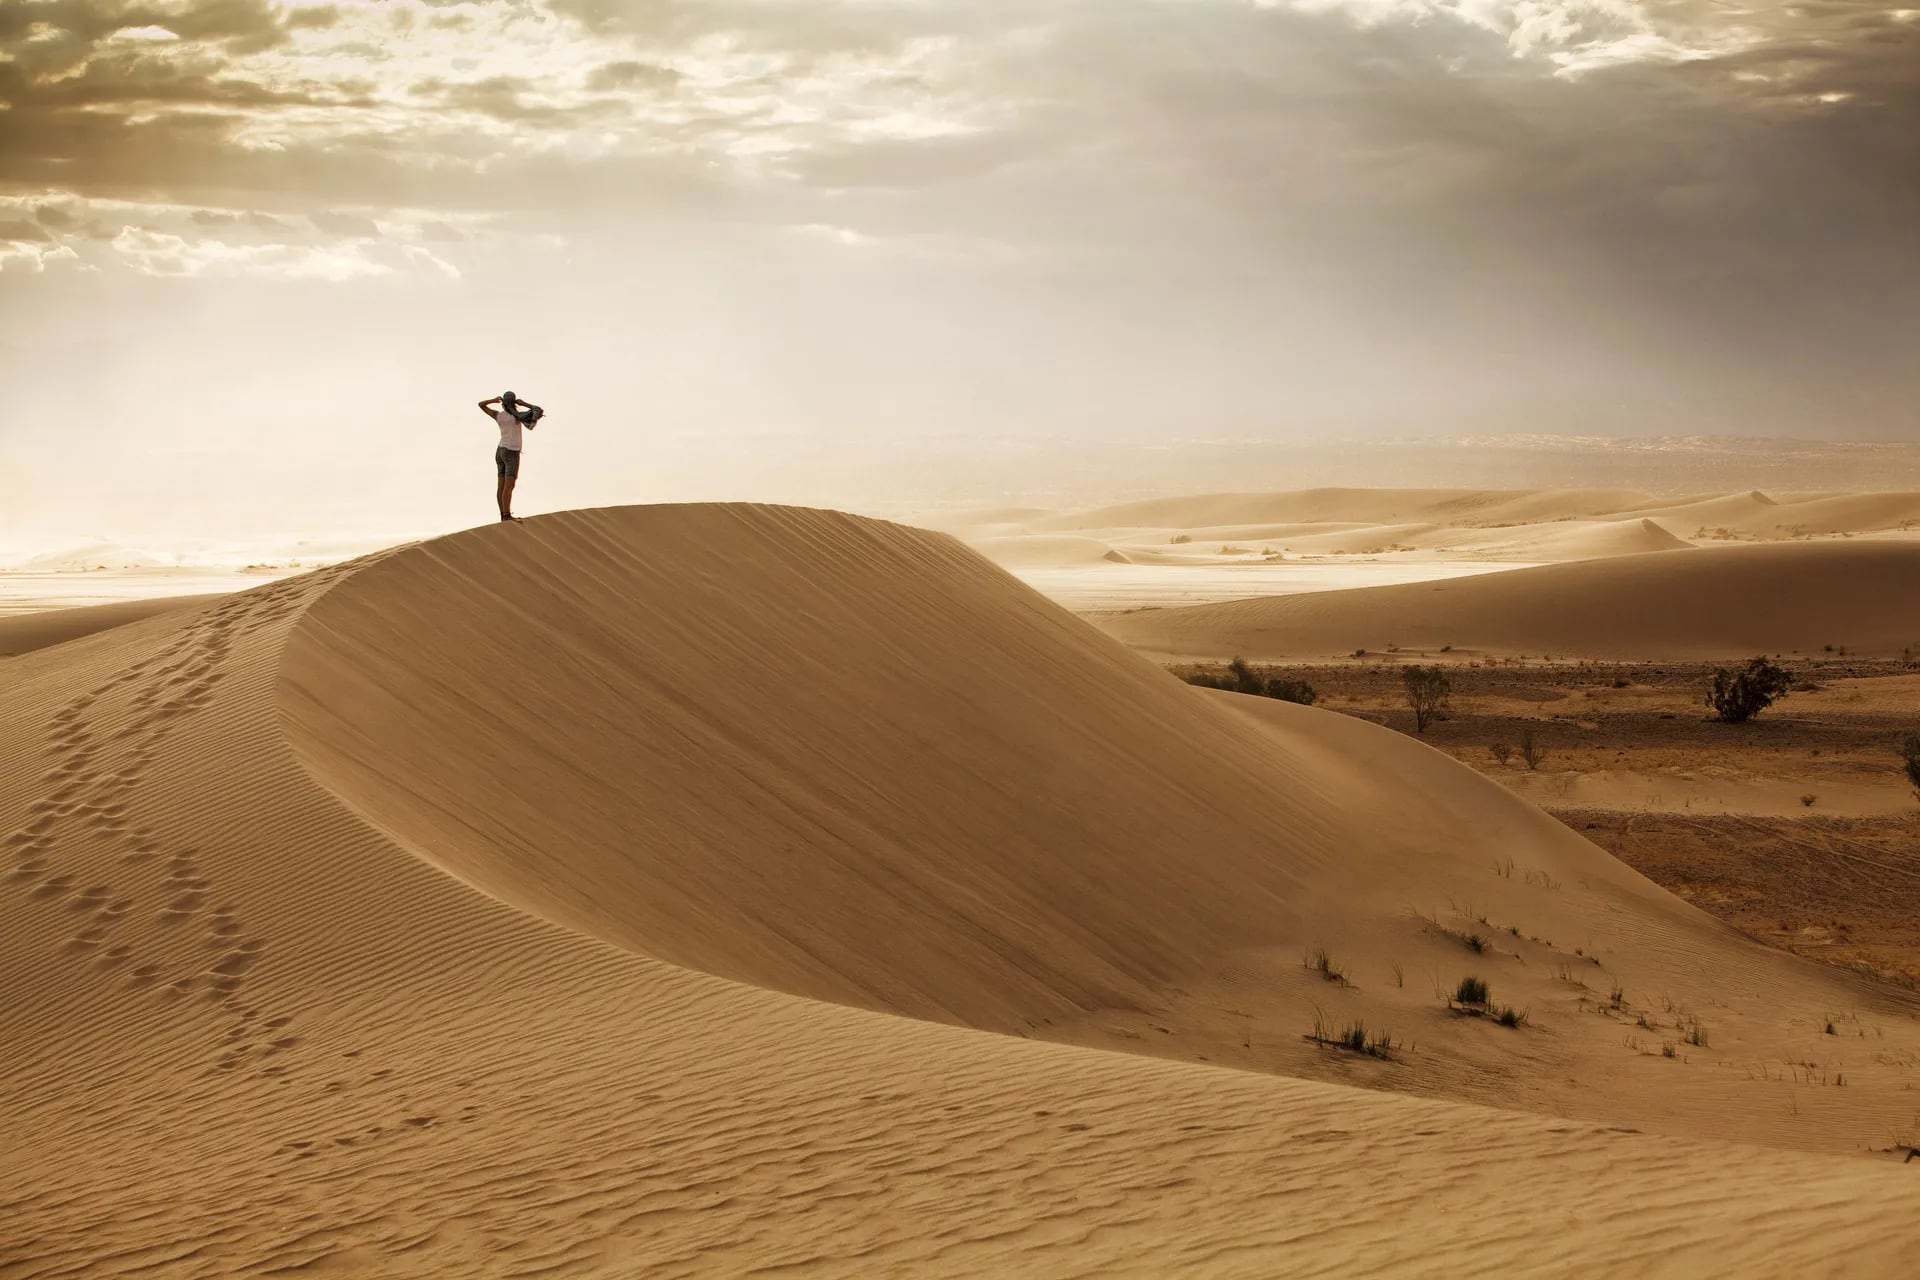 Entre el imponente paisaje desértico de Tatón se eleva la denominada duna Federico Kirbus, en honor al periodista e investigador que descubrió su altura mayor a 2.800 metros.